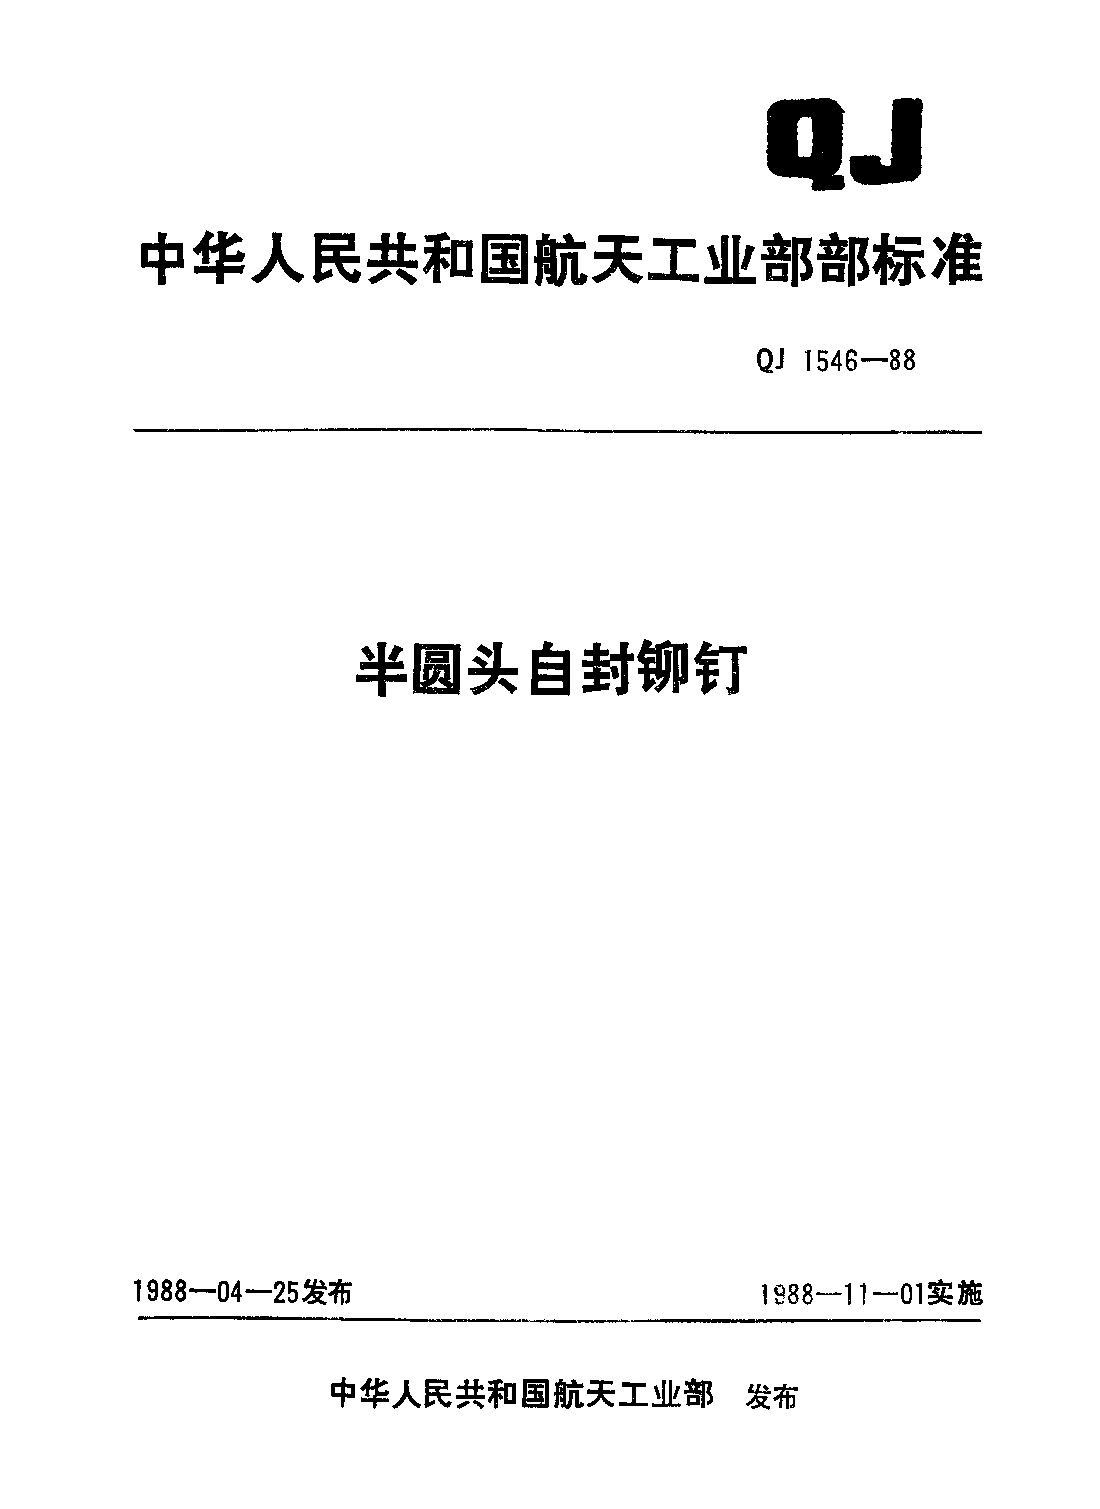 QJ 1546-1988封面图